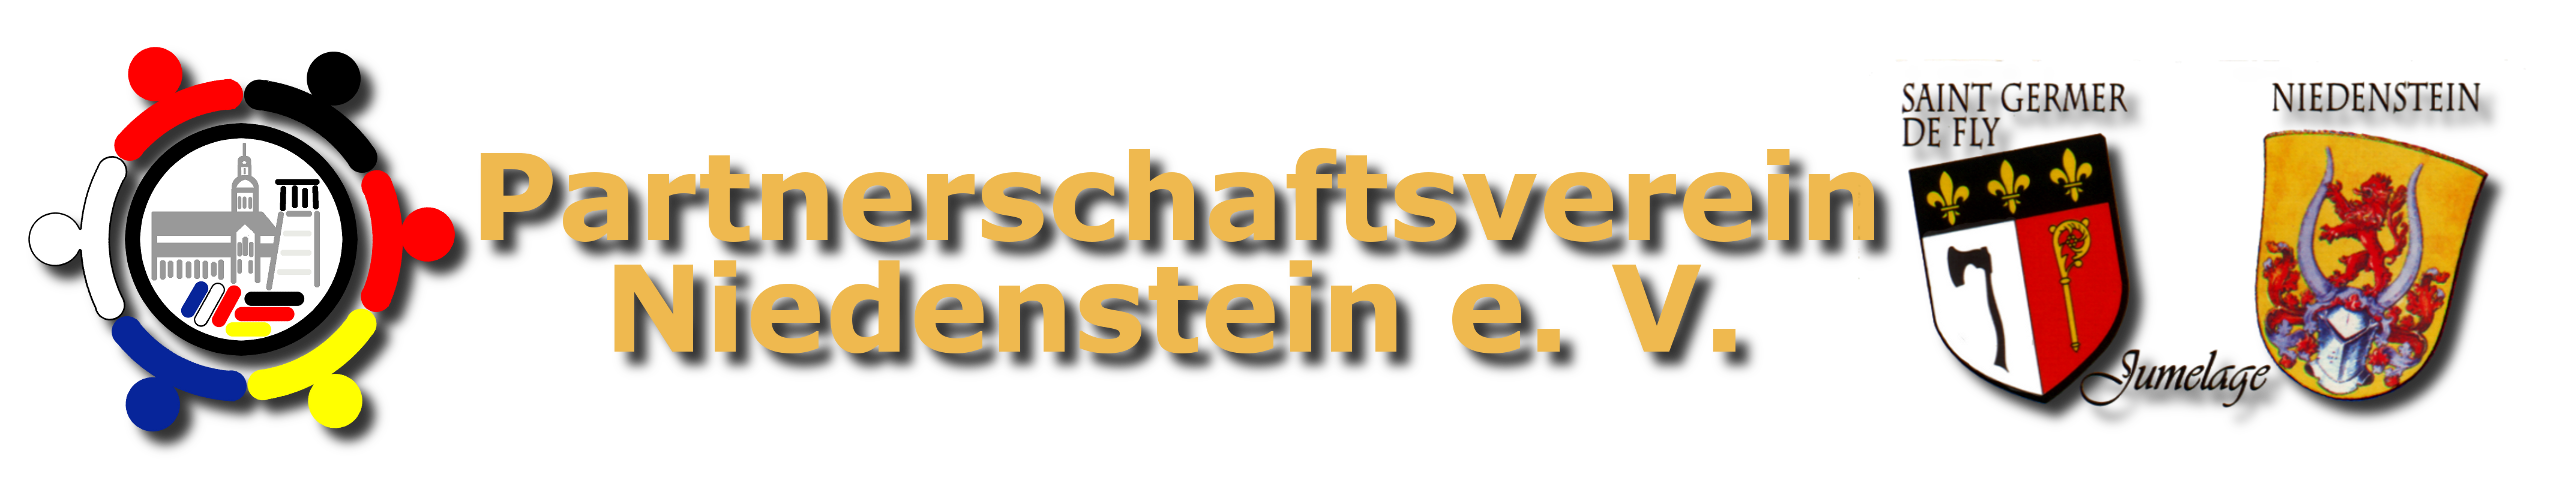 Partnerschaftsverein Niedenstein e. V.